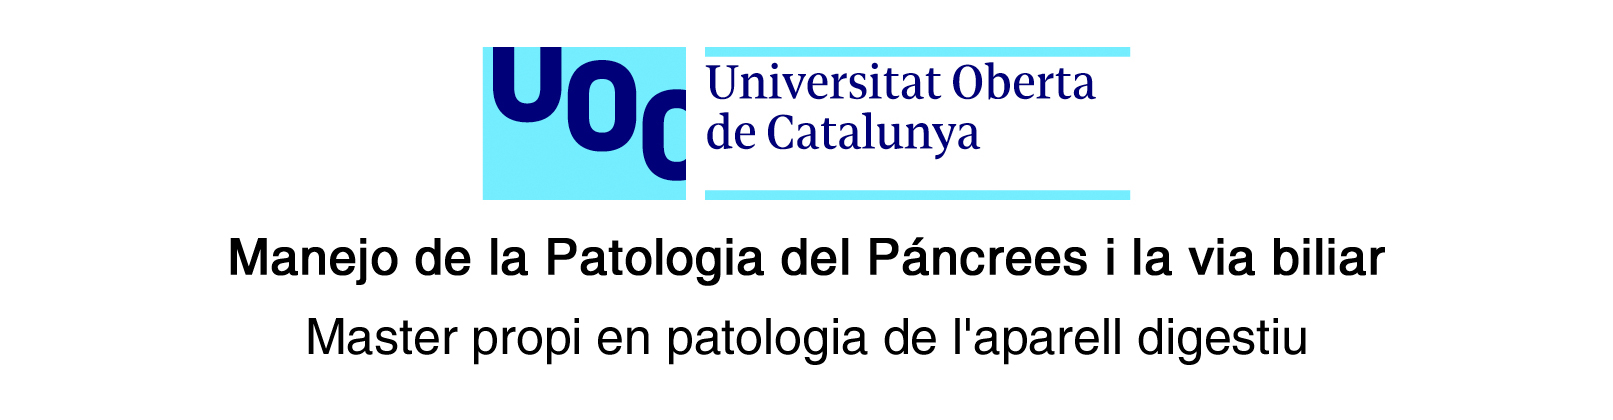 Societat Catalana de Pàncrees